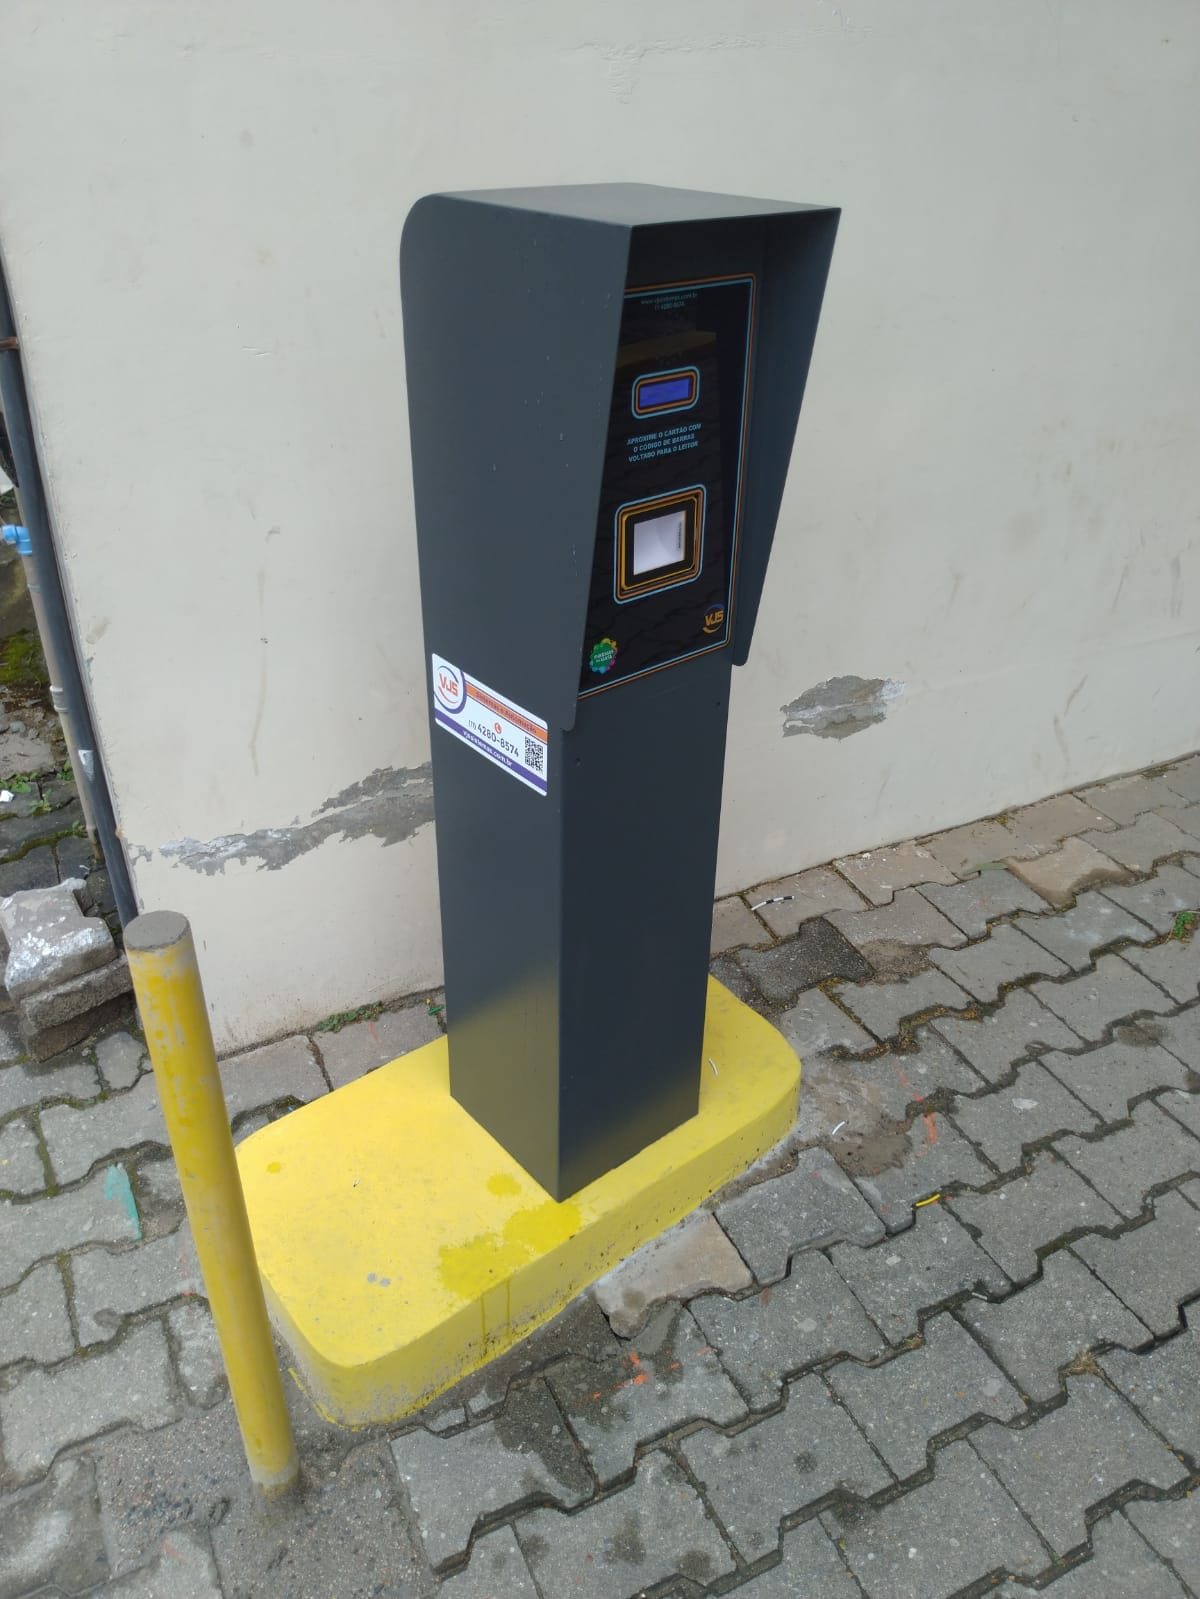 Saiba mais sobre Automação de pagamento de estacionamento da VJS Sistemas clicando aqui